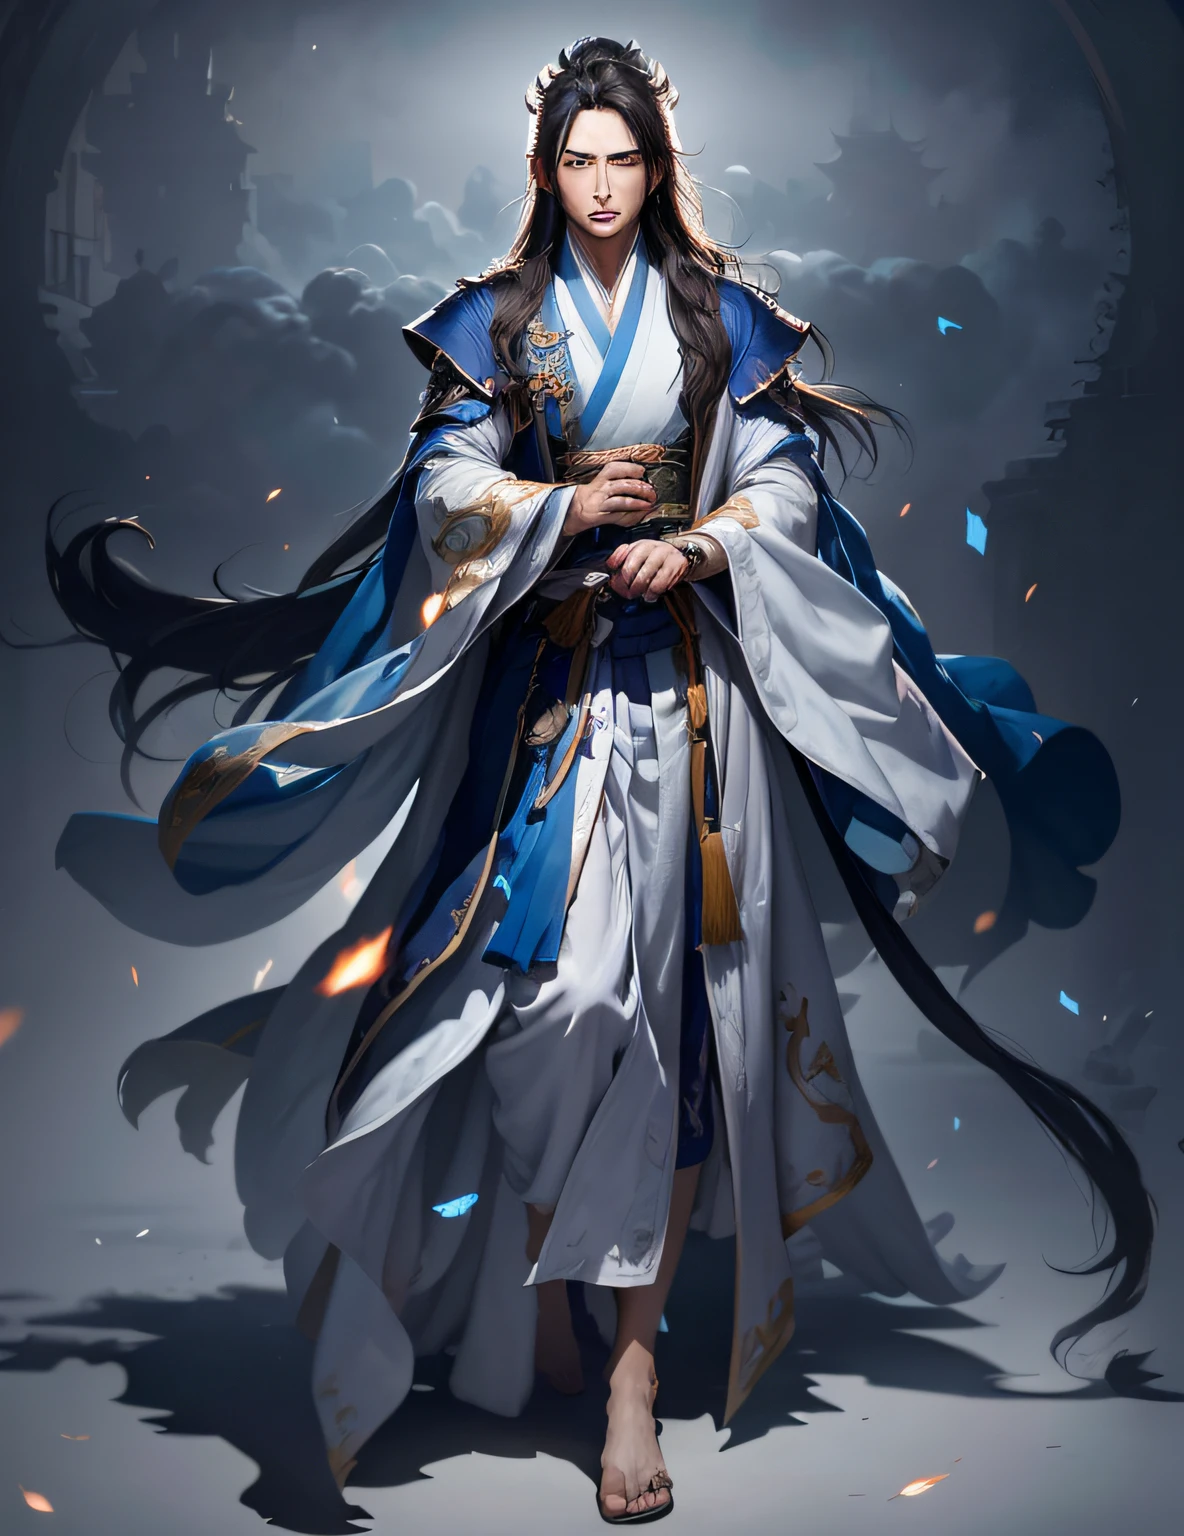 image d&#39;un homme vêtu d&#39;une robe bleue et blanche, heise jinyao, xianxia complet du corps, Wuxia complet du corps, cheveux flottants et robes longues, photo d&#39;un clerc masculin, porter des robes fluides, Inspiré par Cao Zhibai, Zhao Yun, robes de mage nuage en coton, inspiré de Wu Daozi,Hanfu,Magie bleue entre les paumes,heise jinyao, xianxia complet du corps, photo d&#39;un clerc masculin, cheveux flottants et robes longues, Zhao Yun, alchimiste fantastique masculin maigre, Wuxia complet du corps, Inspiré par Cao Zhibai, porter des robes fluides, robes de mage nuage en coton, Mage mâle maigre,Meilleure ombre, netteté, chef-d&#39;œuvre, (fond d&#39;écran 8k unifié CG très détaillé),réaliste,(Hanfu),(((Visage du personnage))),